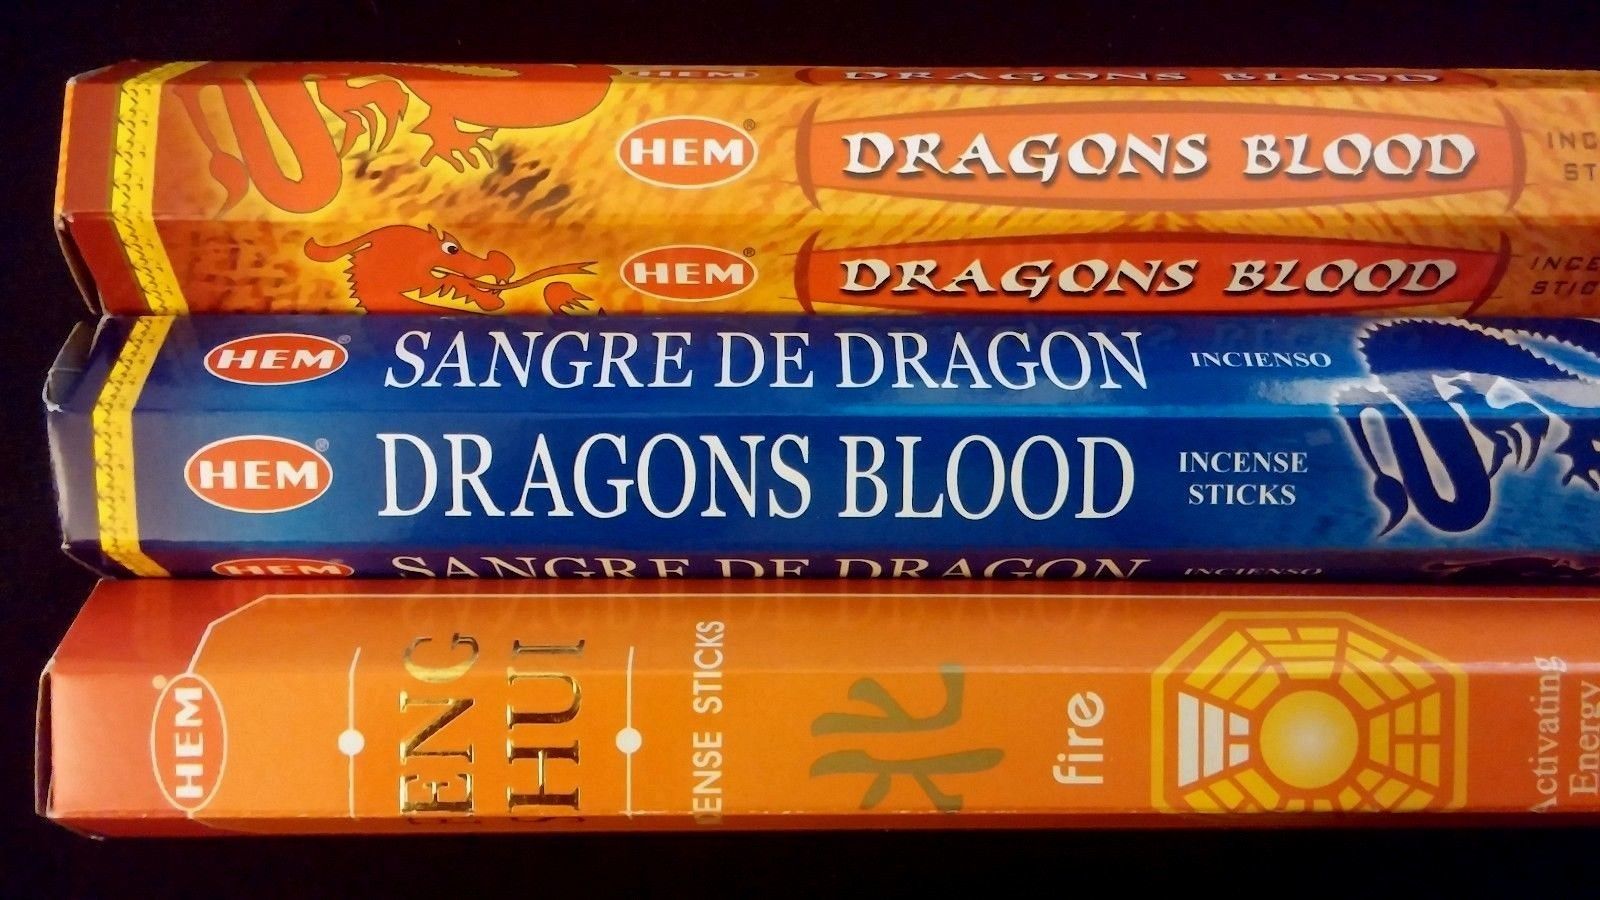 FANTASY Dragons Blood Blue Fire 60 HEM Incense Sticks 3 Scent Sampler Gift Set